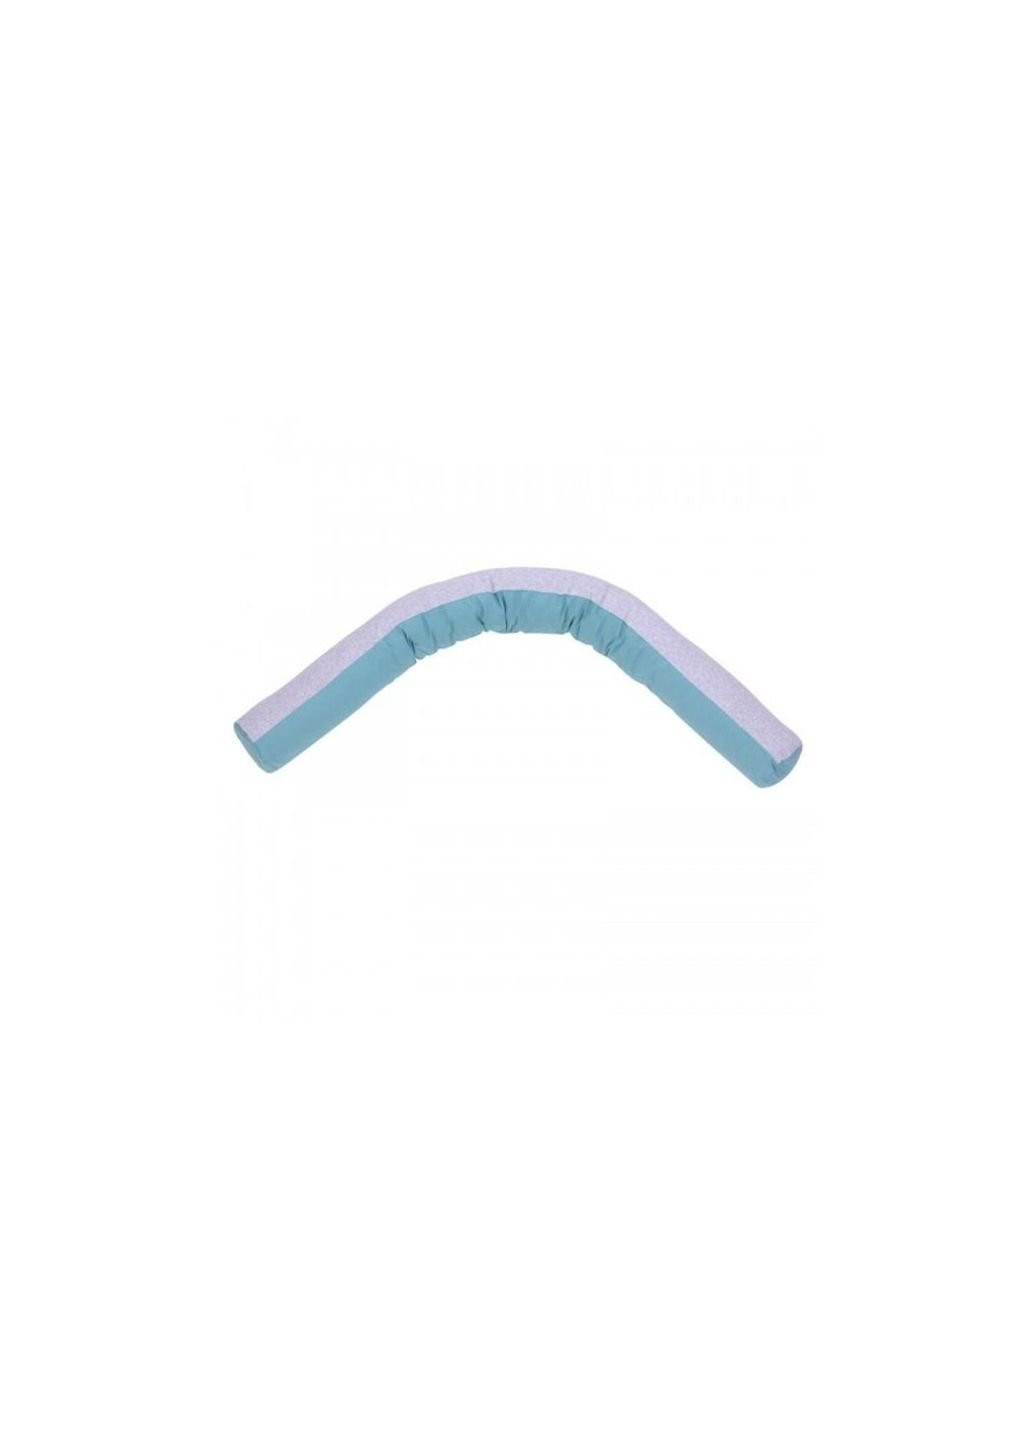 Подушка для кормления "Comfort Long Velour grey-tiffany" 170*52 (302.01.3) Верес (254079996)